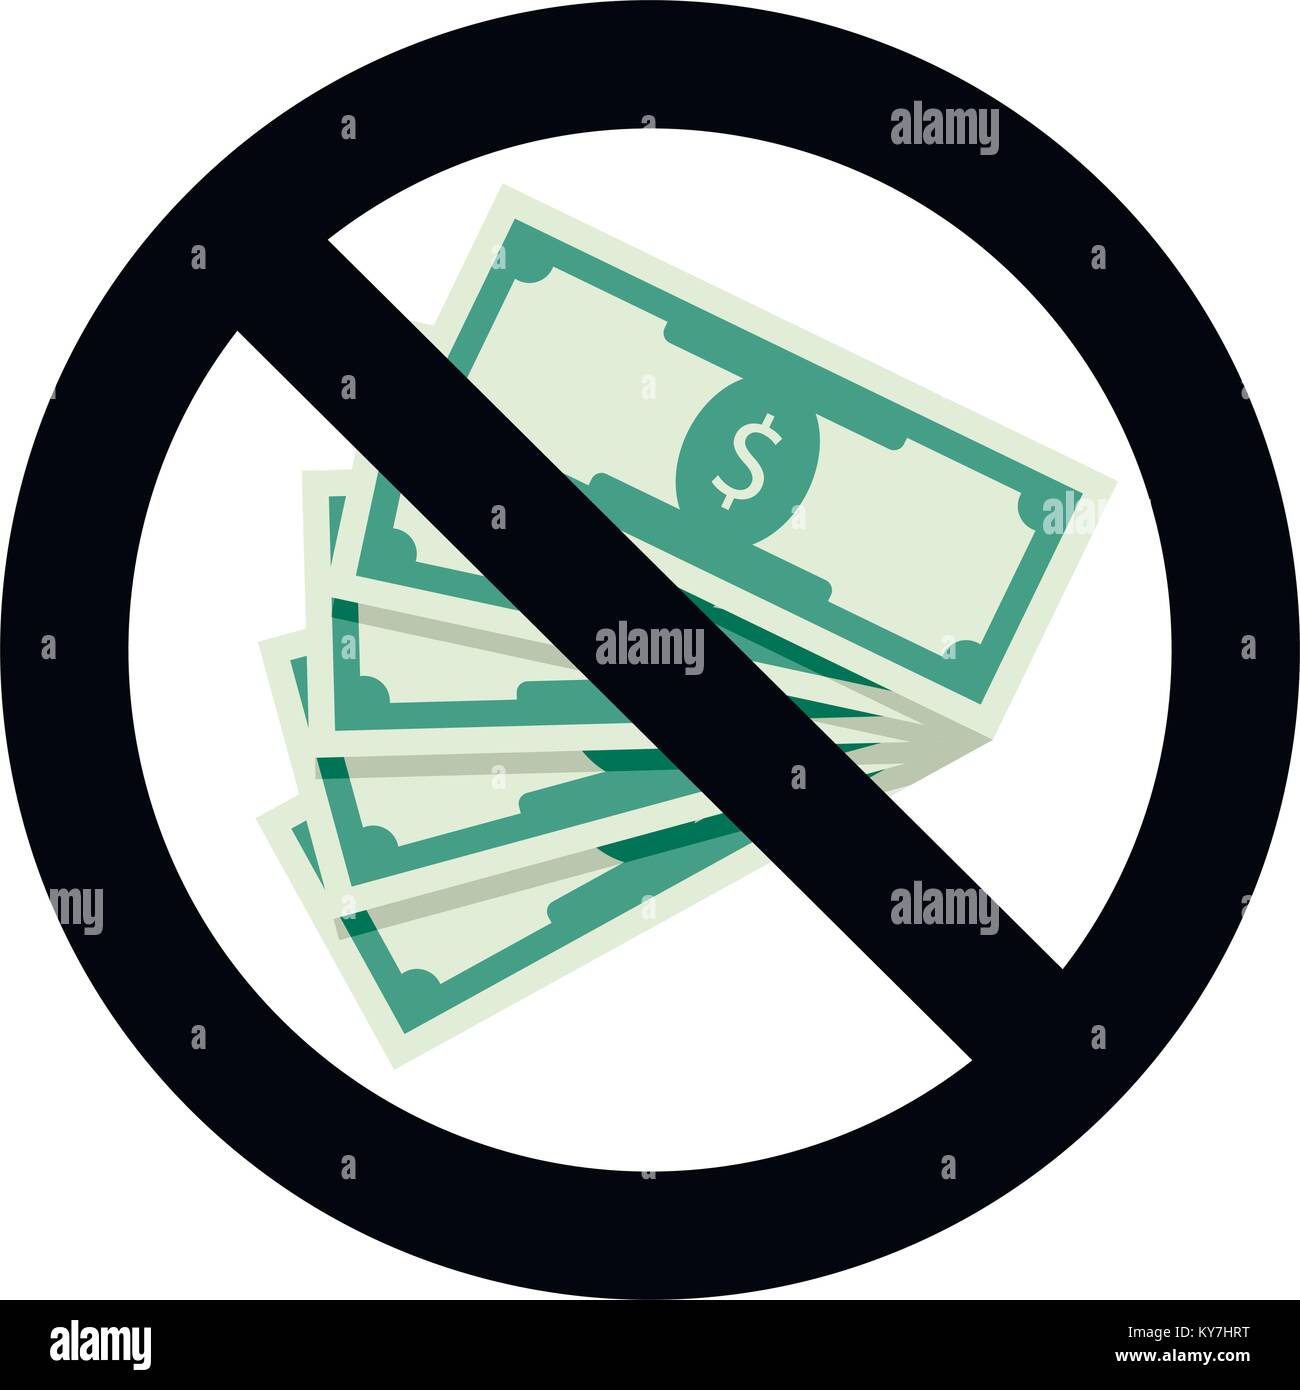 Keine Bestechung Symbol. Illegale banknote Bestechung, korrupt und Bargeld Euro-Banknoten verbieten. Vector Illustration Stock Vektor